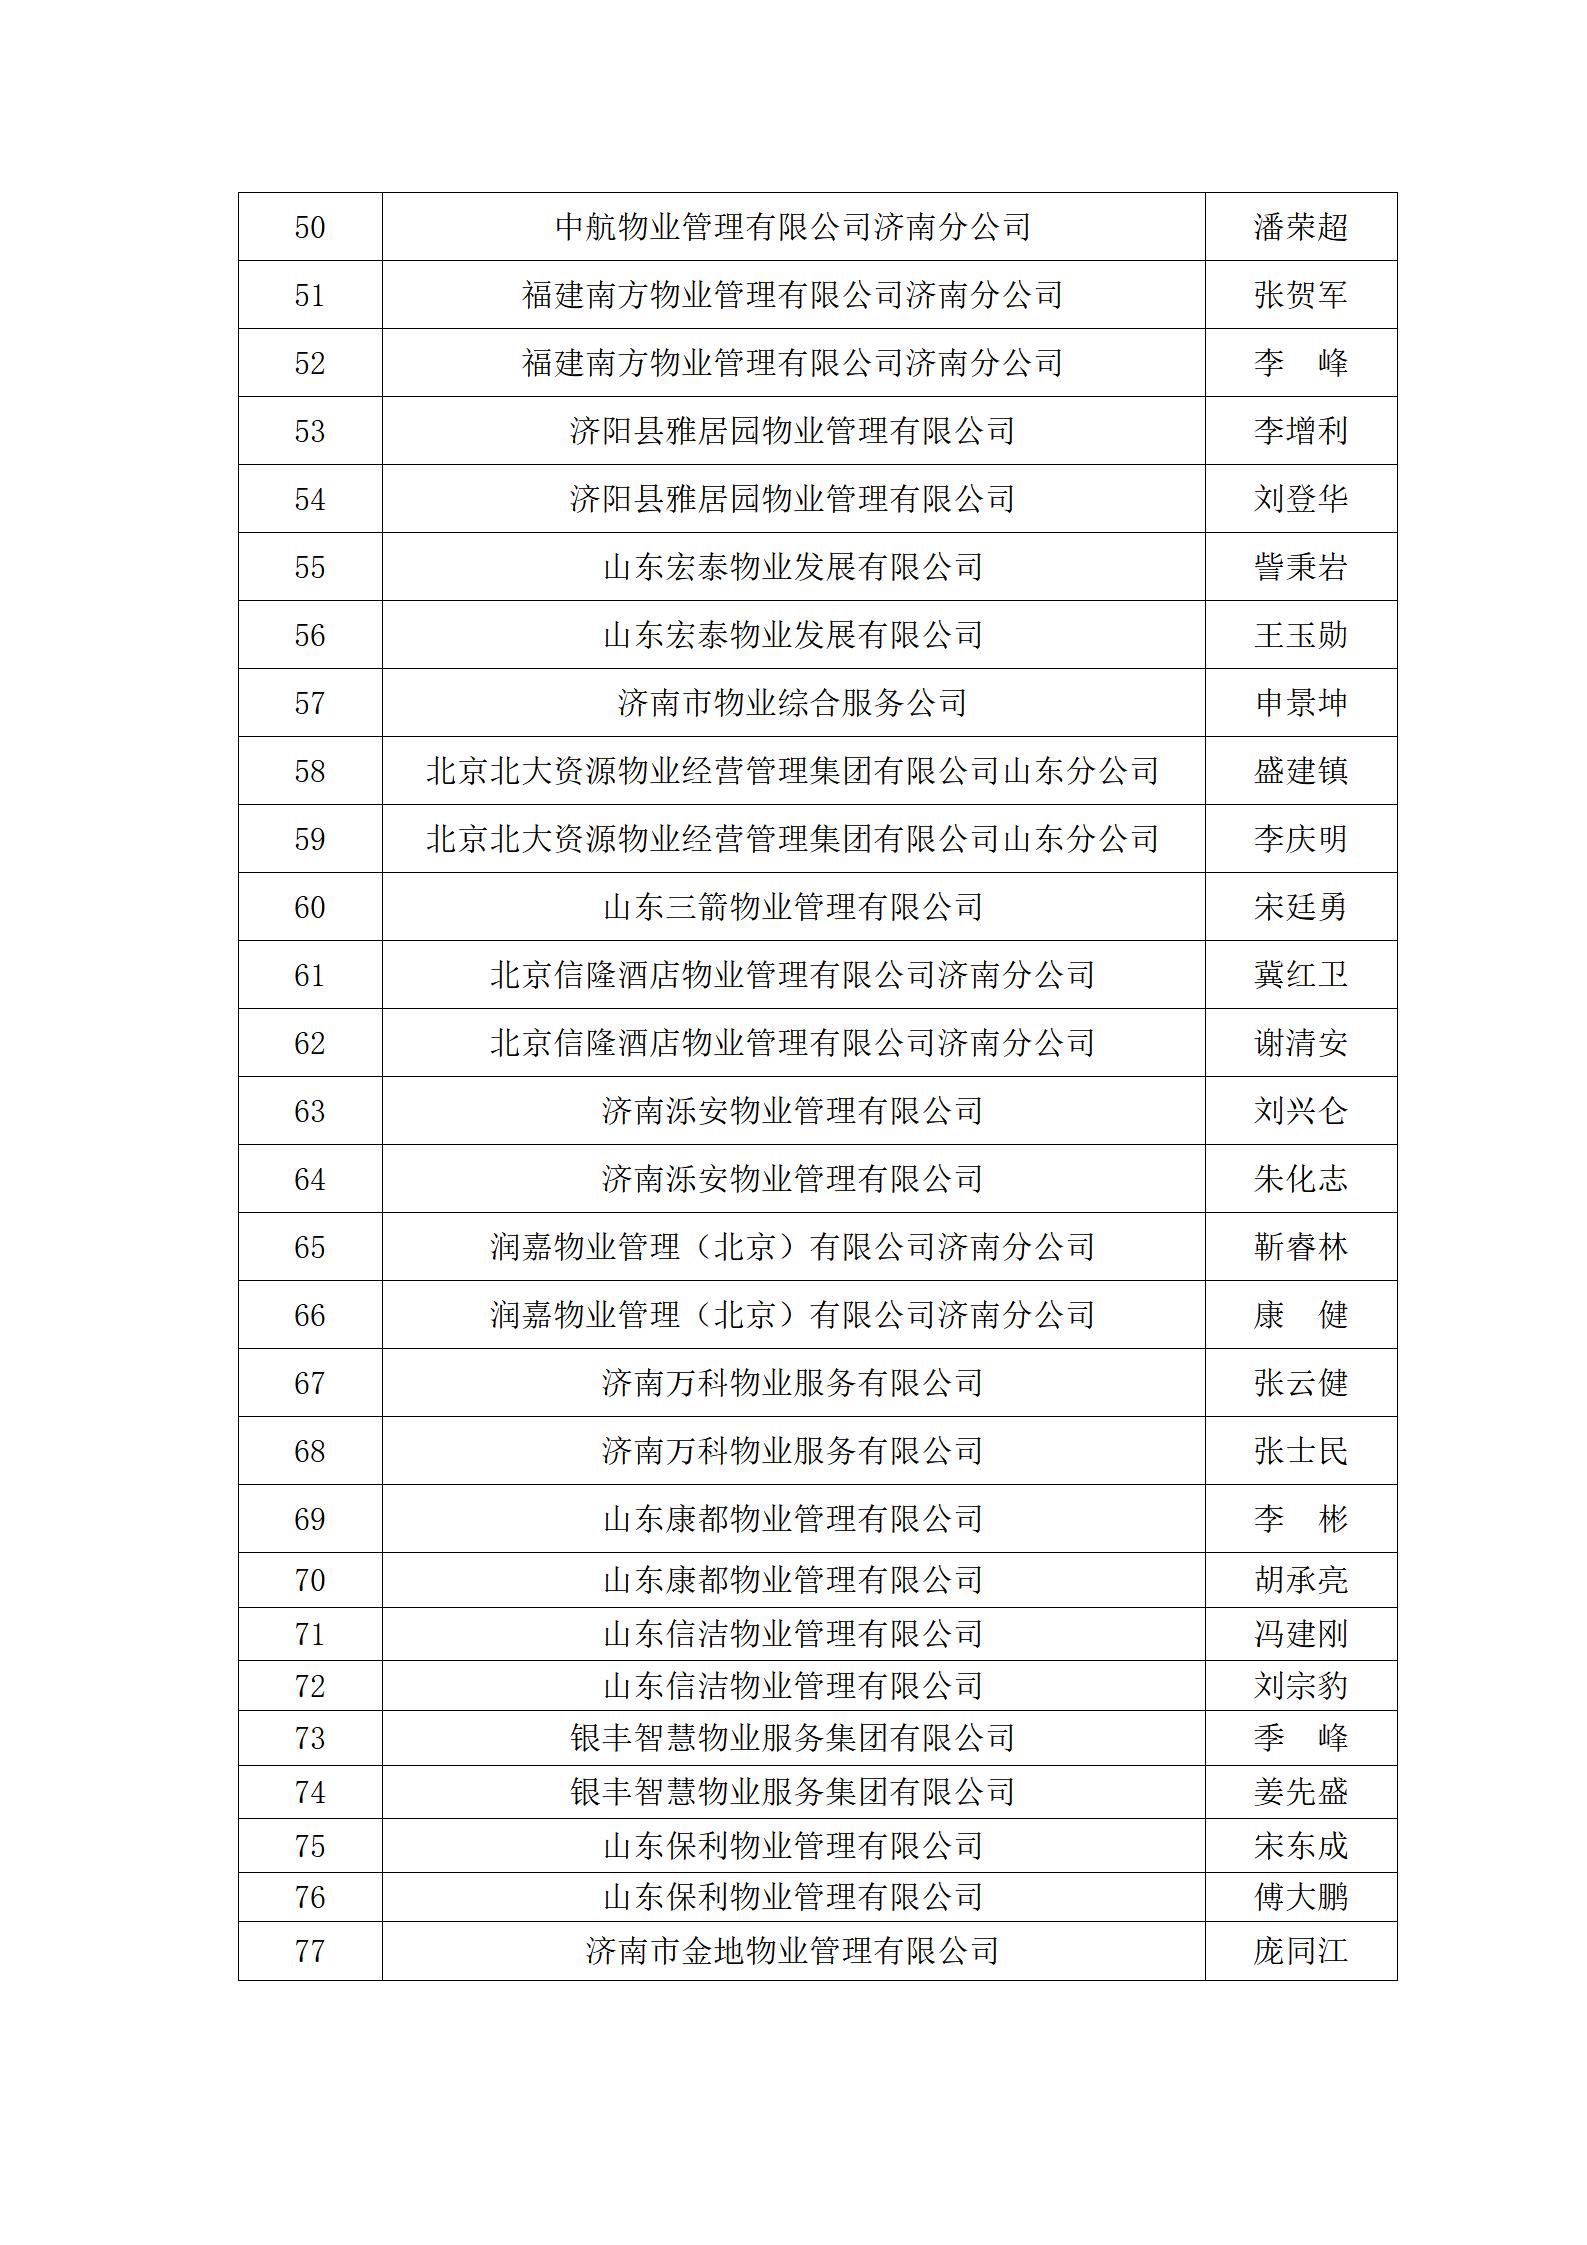 关于“明德杯”第六届济南市物业服务行业职业技能竞赛选手名单的公示_07